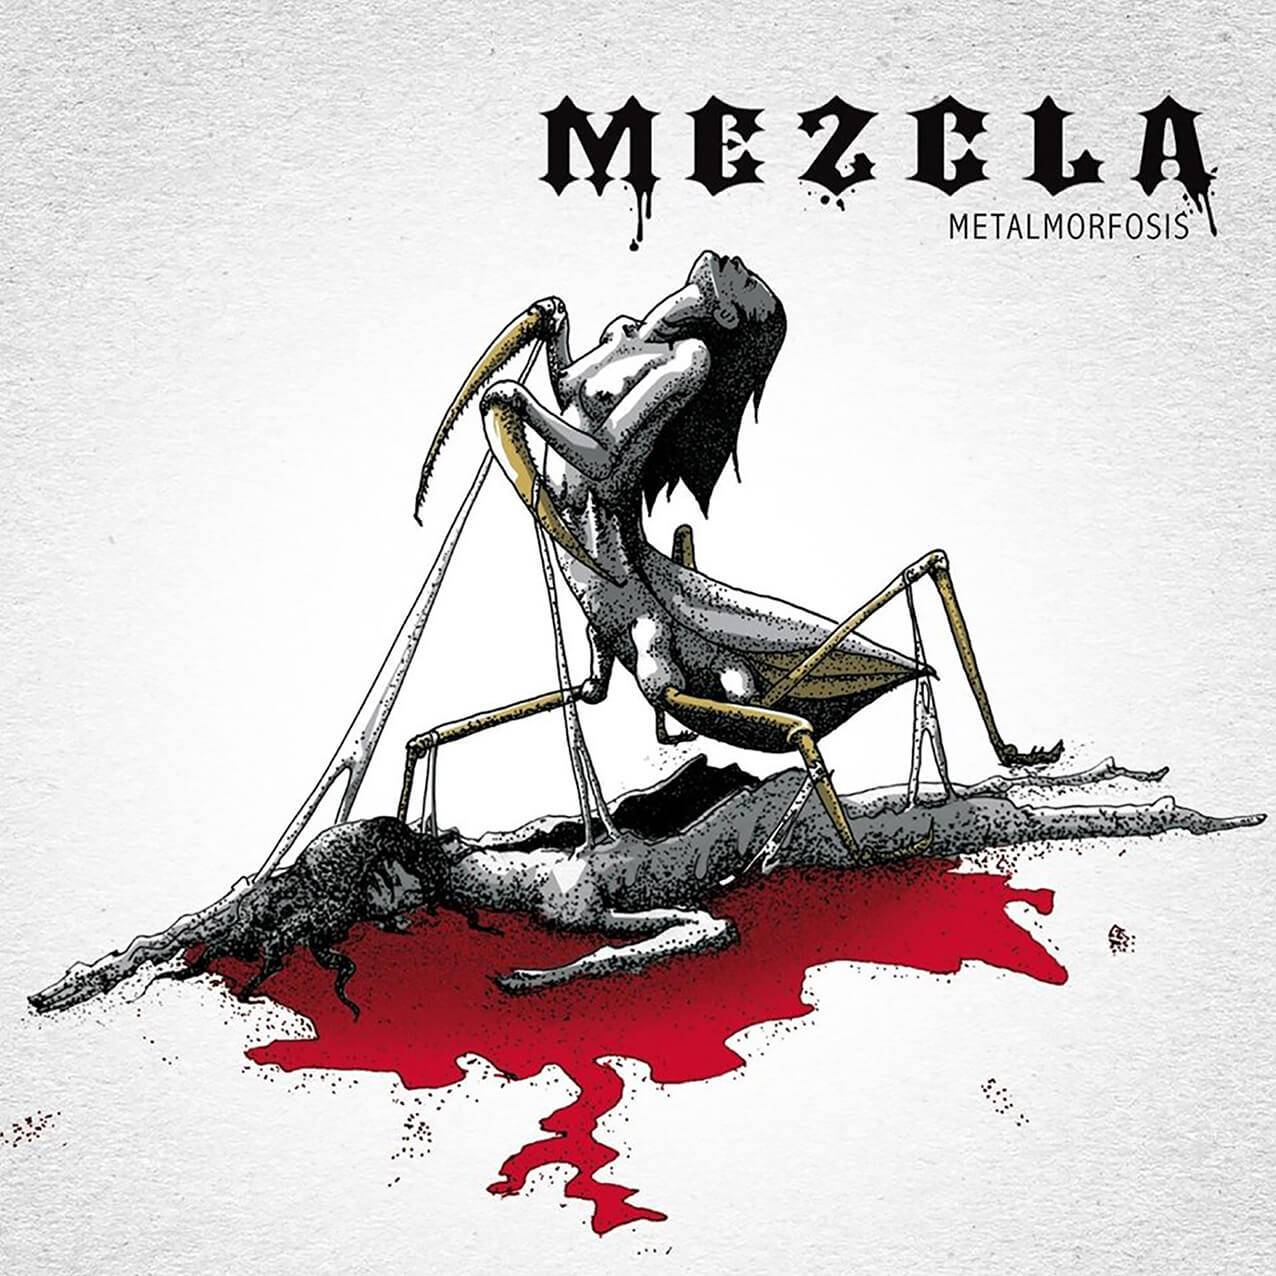 Mezcla : "Metalmorfosis" CD & Digital 24th November 2016 M.U.S.I.C. Records.